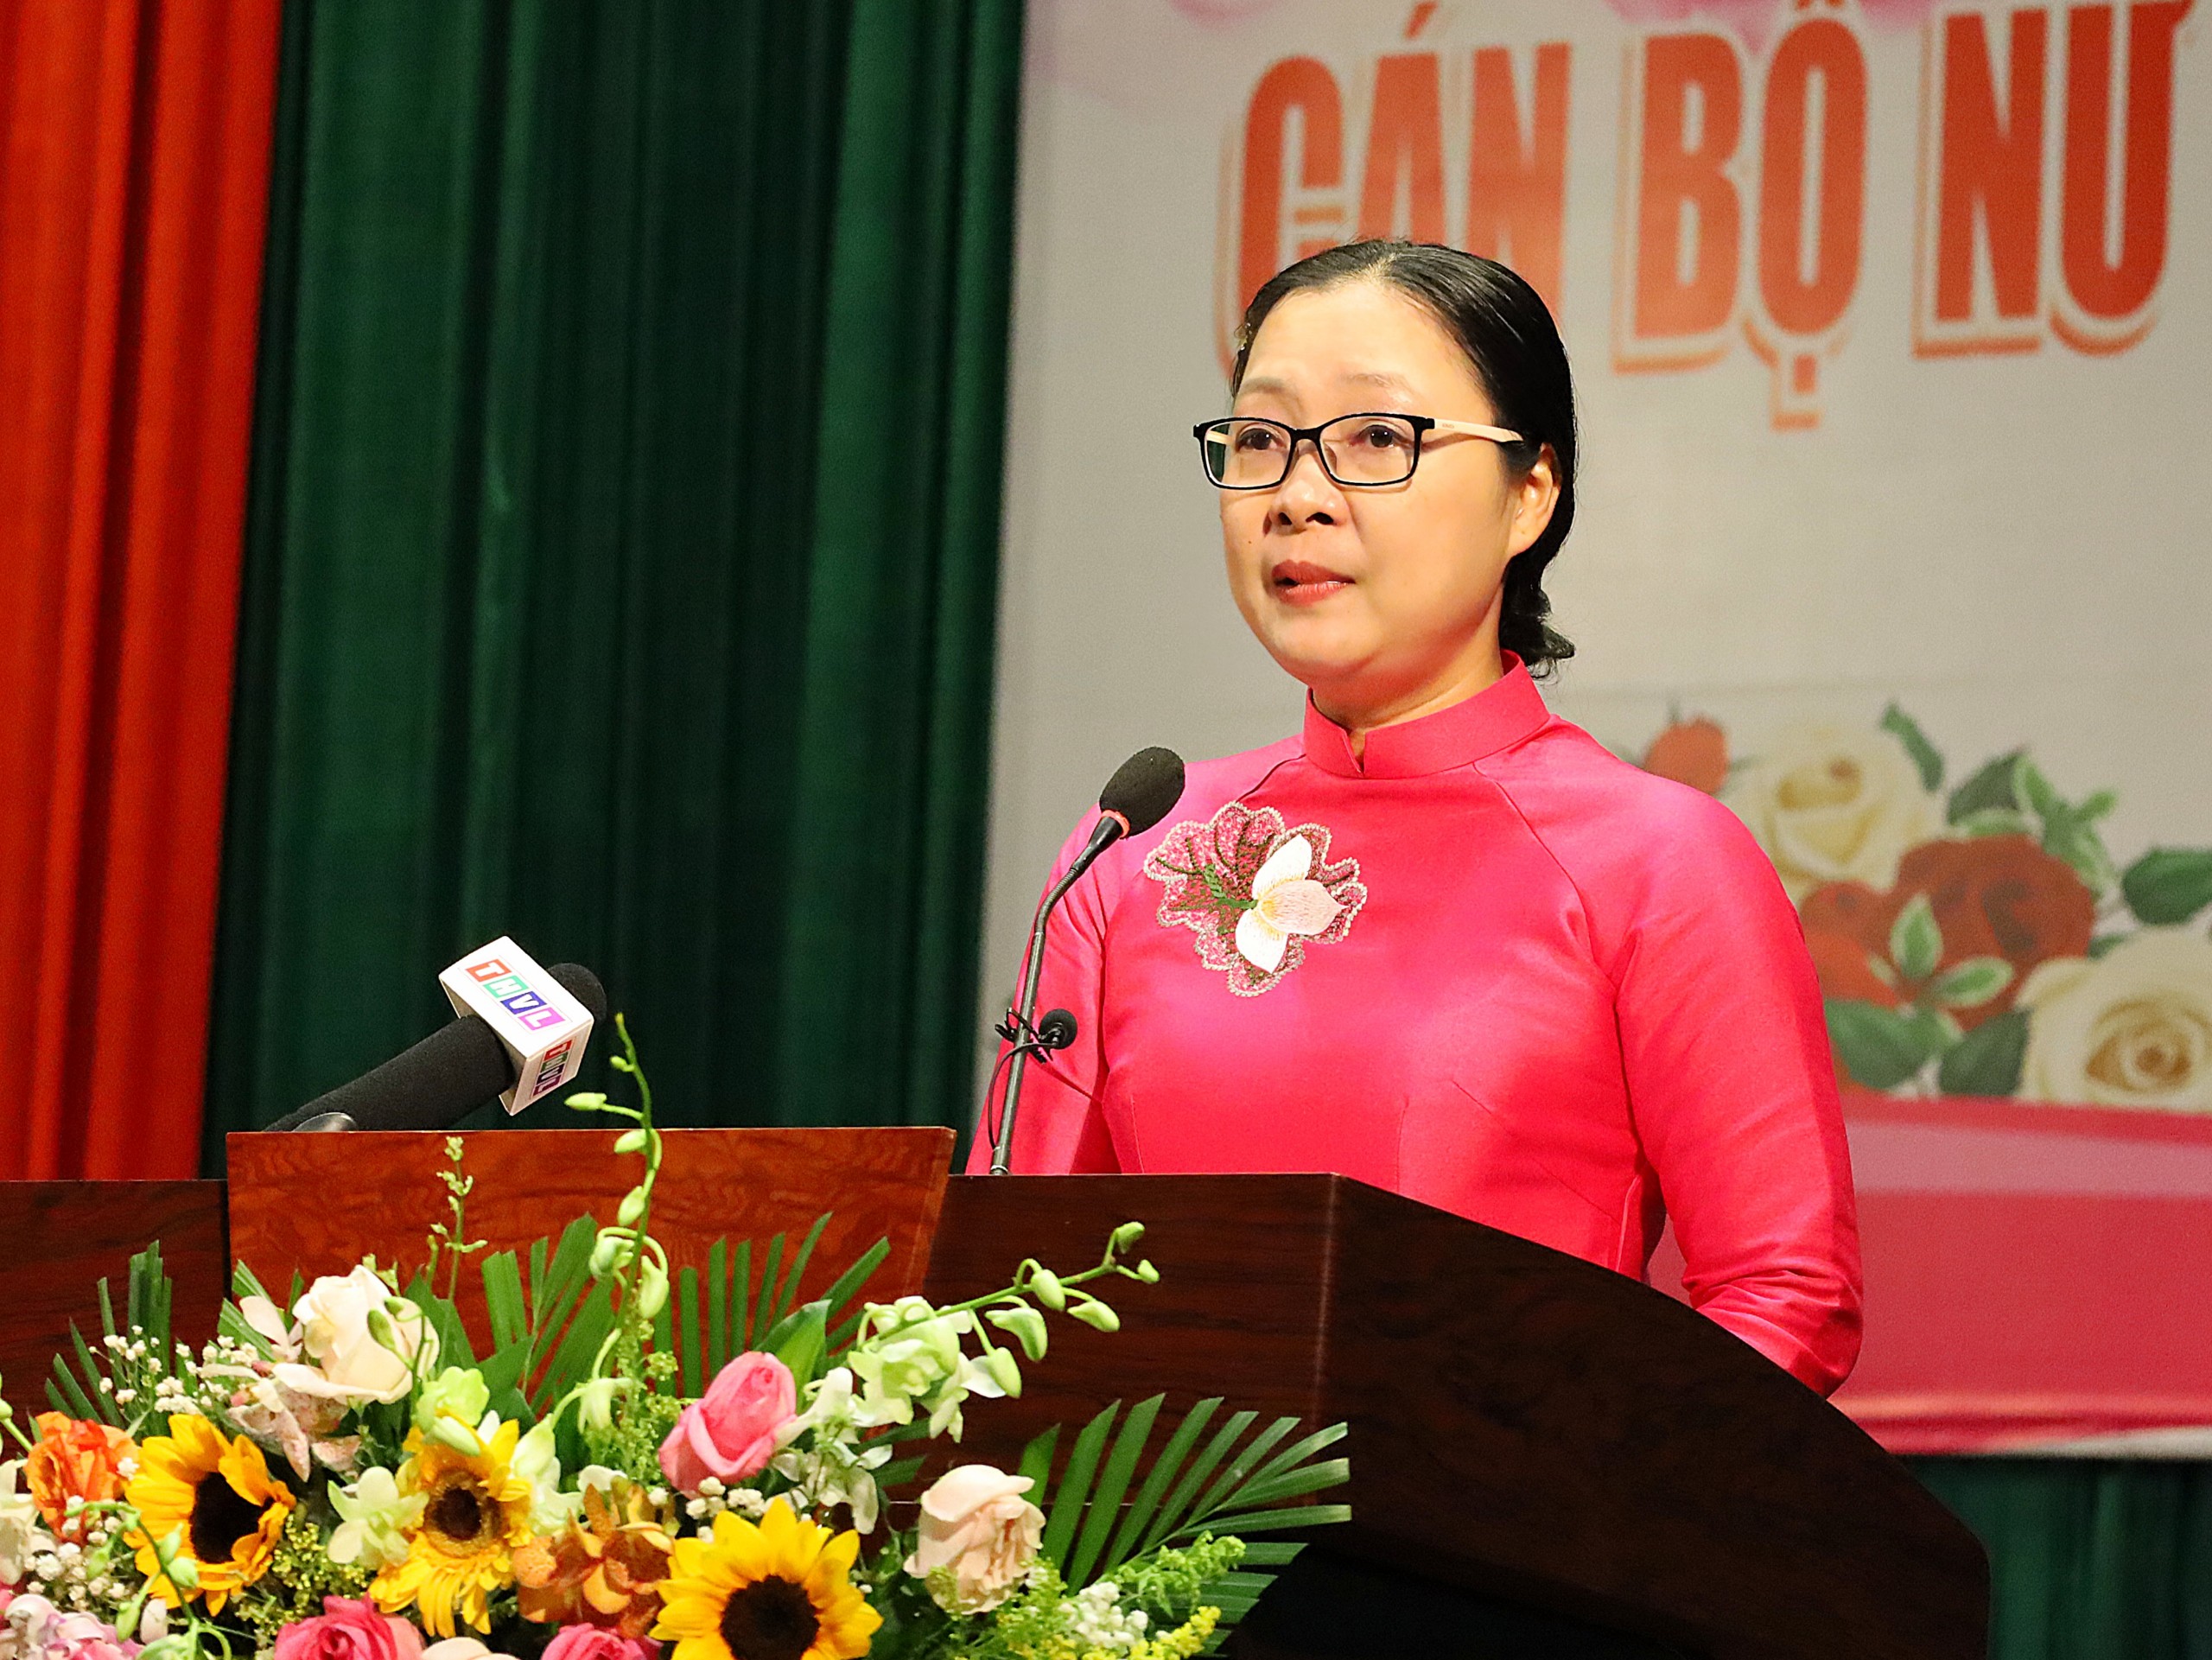 Bà Nguyễn Thị Quyên Thanh - Phó Chủ tịch UBND tỉnh, Trưởng Ban chỉ đạo Bình đẳng giới và Vì sự tiến bộ của phụ nữ tỉnh Vĩnh Long phát biểu chào mừng tại buổi họp mặt.